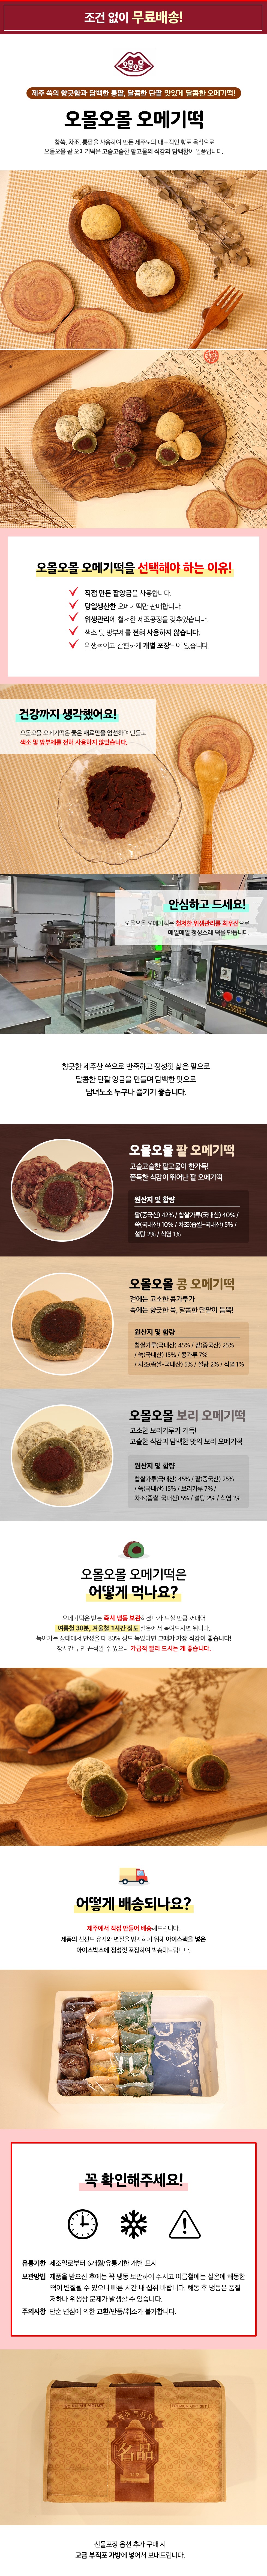 팥오메기떡, 콩까루오메기떡, 보리오메기떡 30/60개 상세